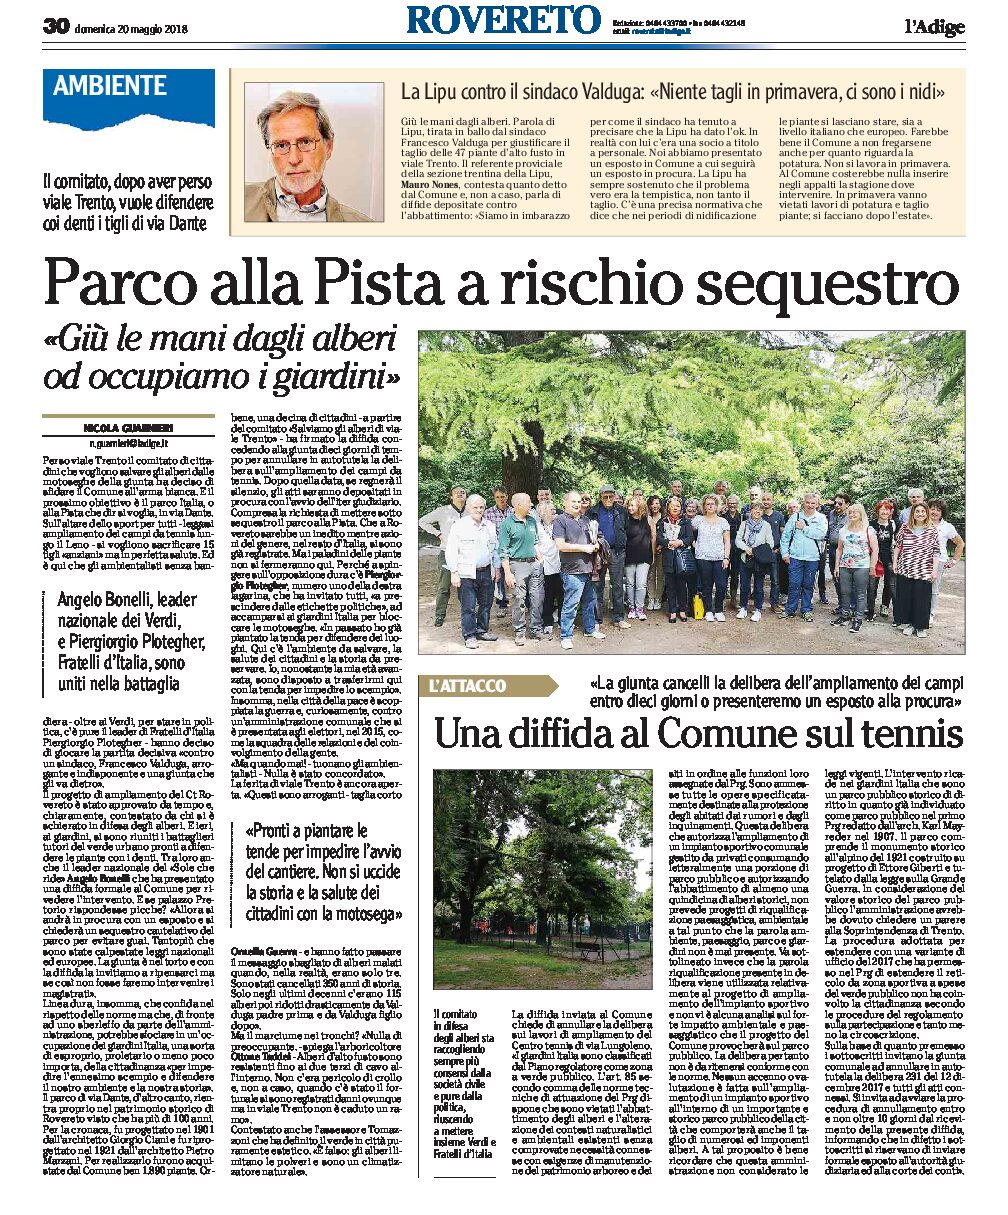 Rovereto: il Comitato ora difende i tigli del Parco alla Pista, in via Dante